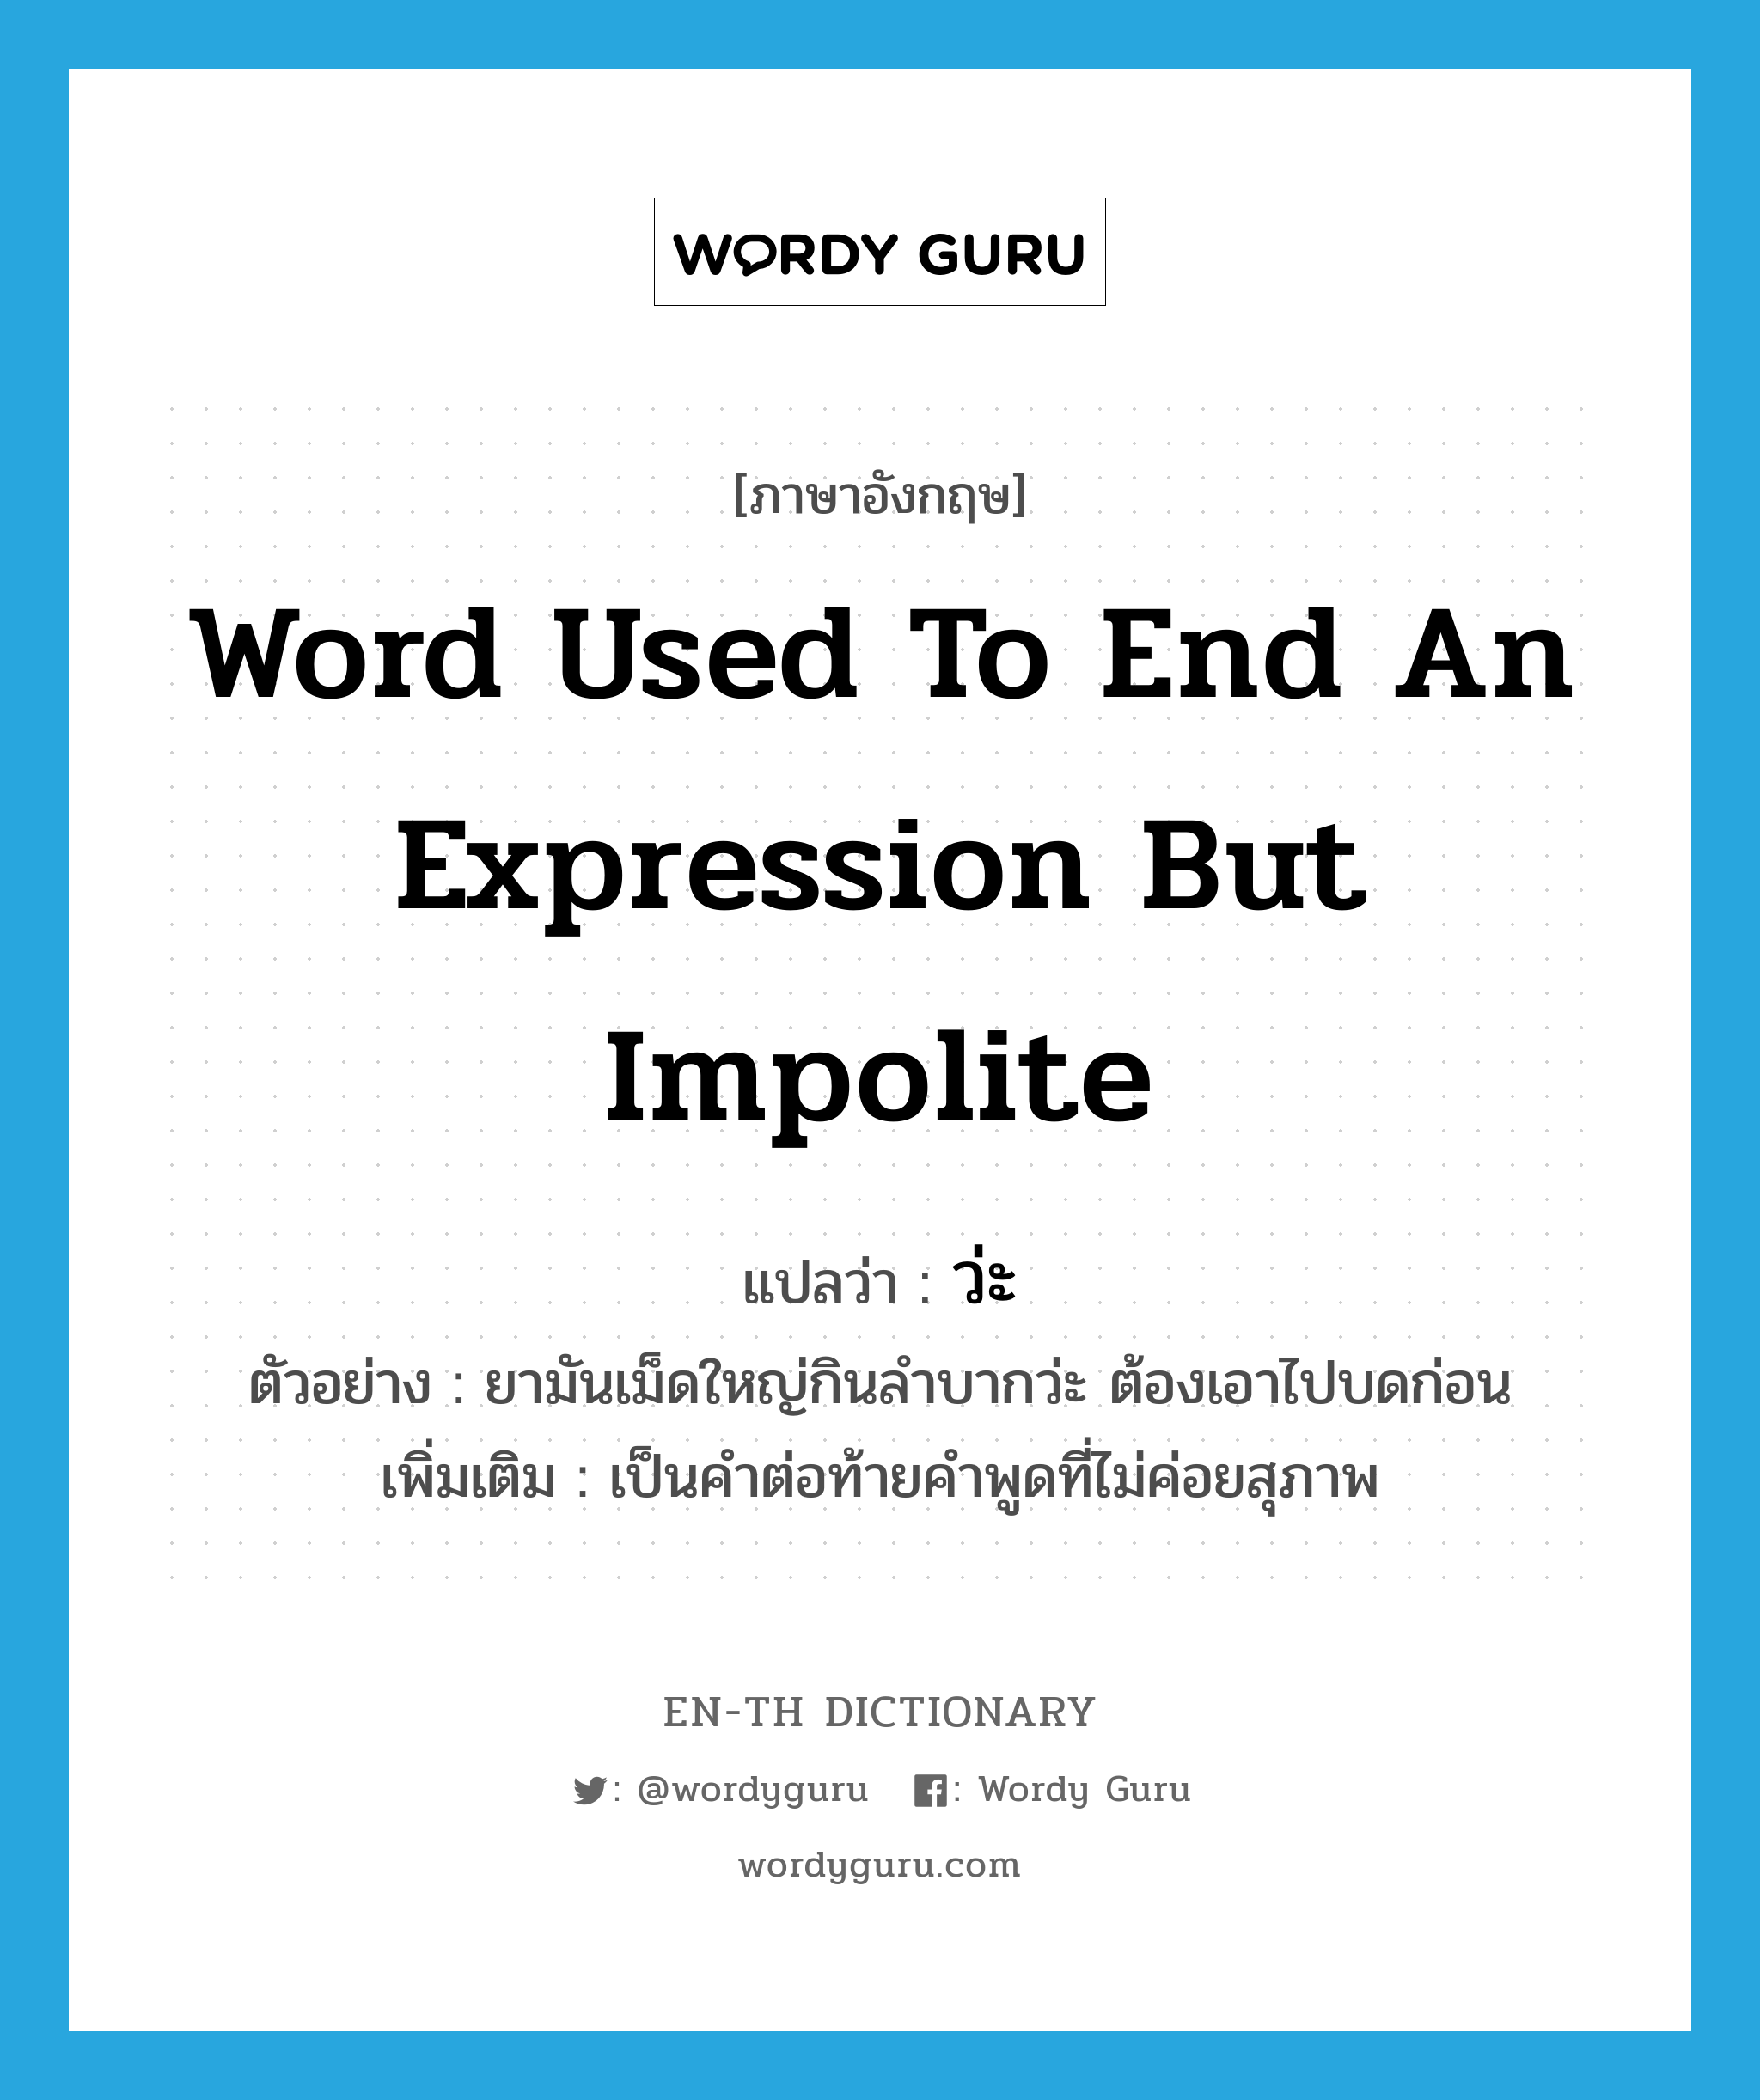 word used to end an expression but impolite แปลว่า? คำศัพท์ในกลุ่มประเภท END, คำศัพท์ภาษาอังกฤษ word used to end an expression but impolite แปลว่า ว่ะ ประเภท END ตัวอย่าง ยามันเม็ดใหญ่กินลำบากว่ะ ต้องเอาไปบดก่อน เพิ่มเติม เป็นคำต่อท้ายคำพูดที่ไม่ค่อยสุภาพ หมวด END